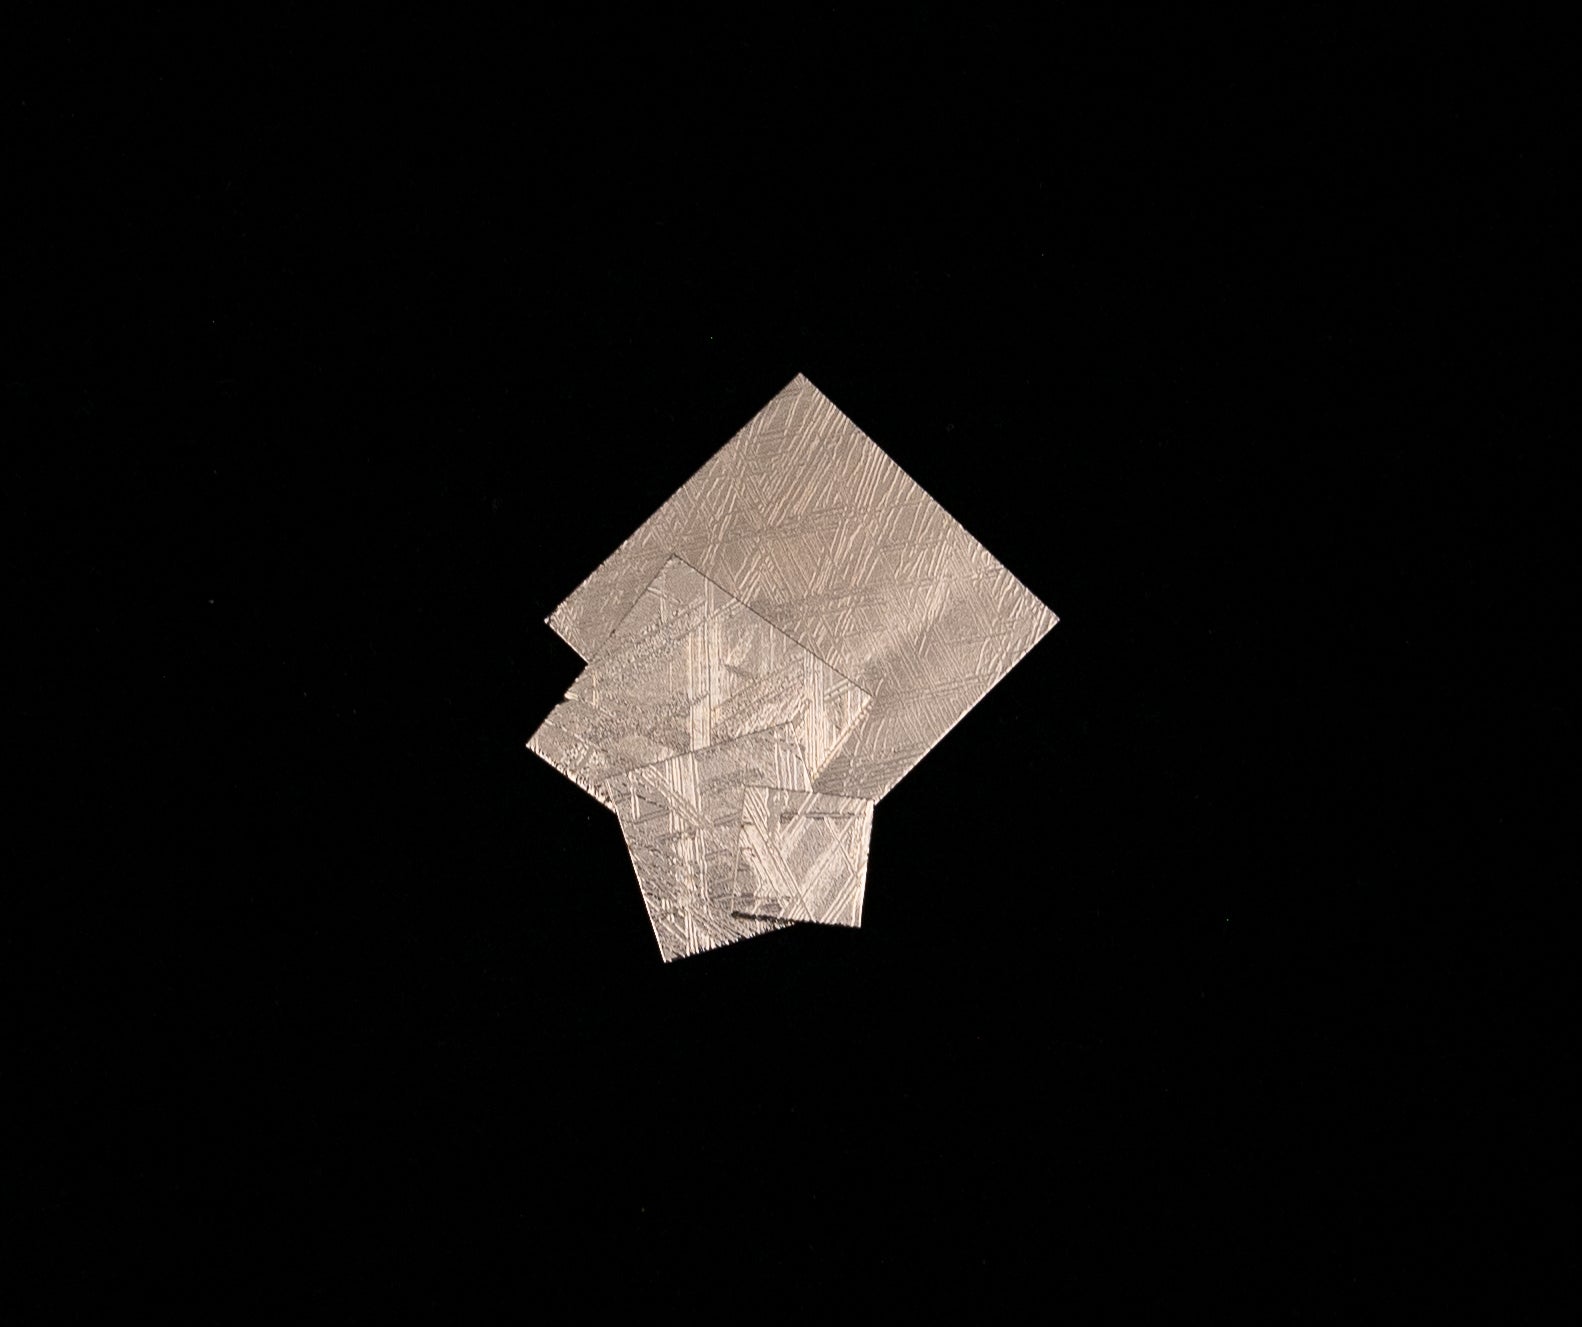 Muonionalusta Meteorite Square Slice